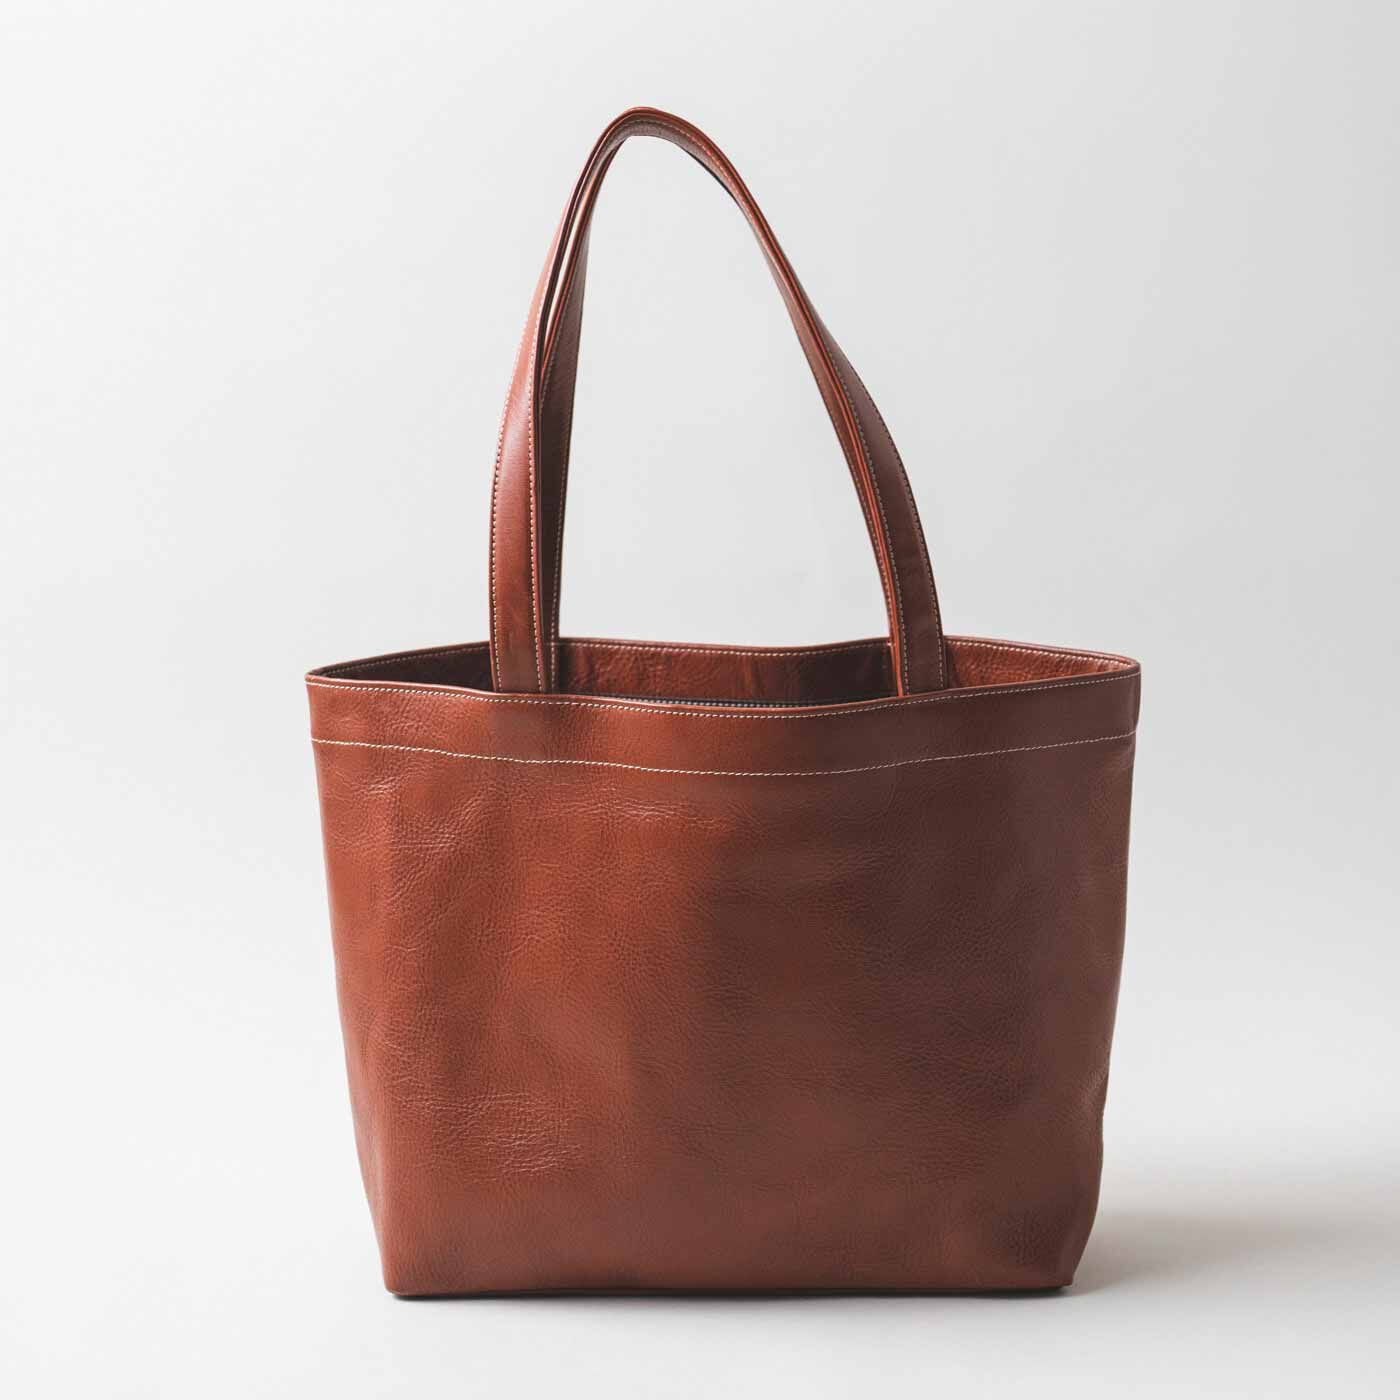 ＆Stories|プランナーYUMIと鞄職人が作った 職人本革のトートバッグ〈アンティークブラウン〉|ありそうでなかったシンプルで便利なトートバッグ。